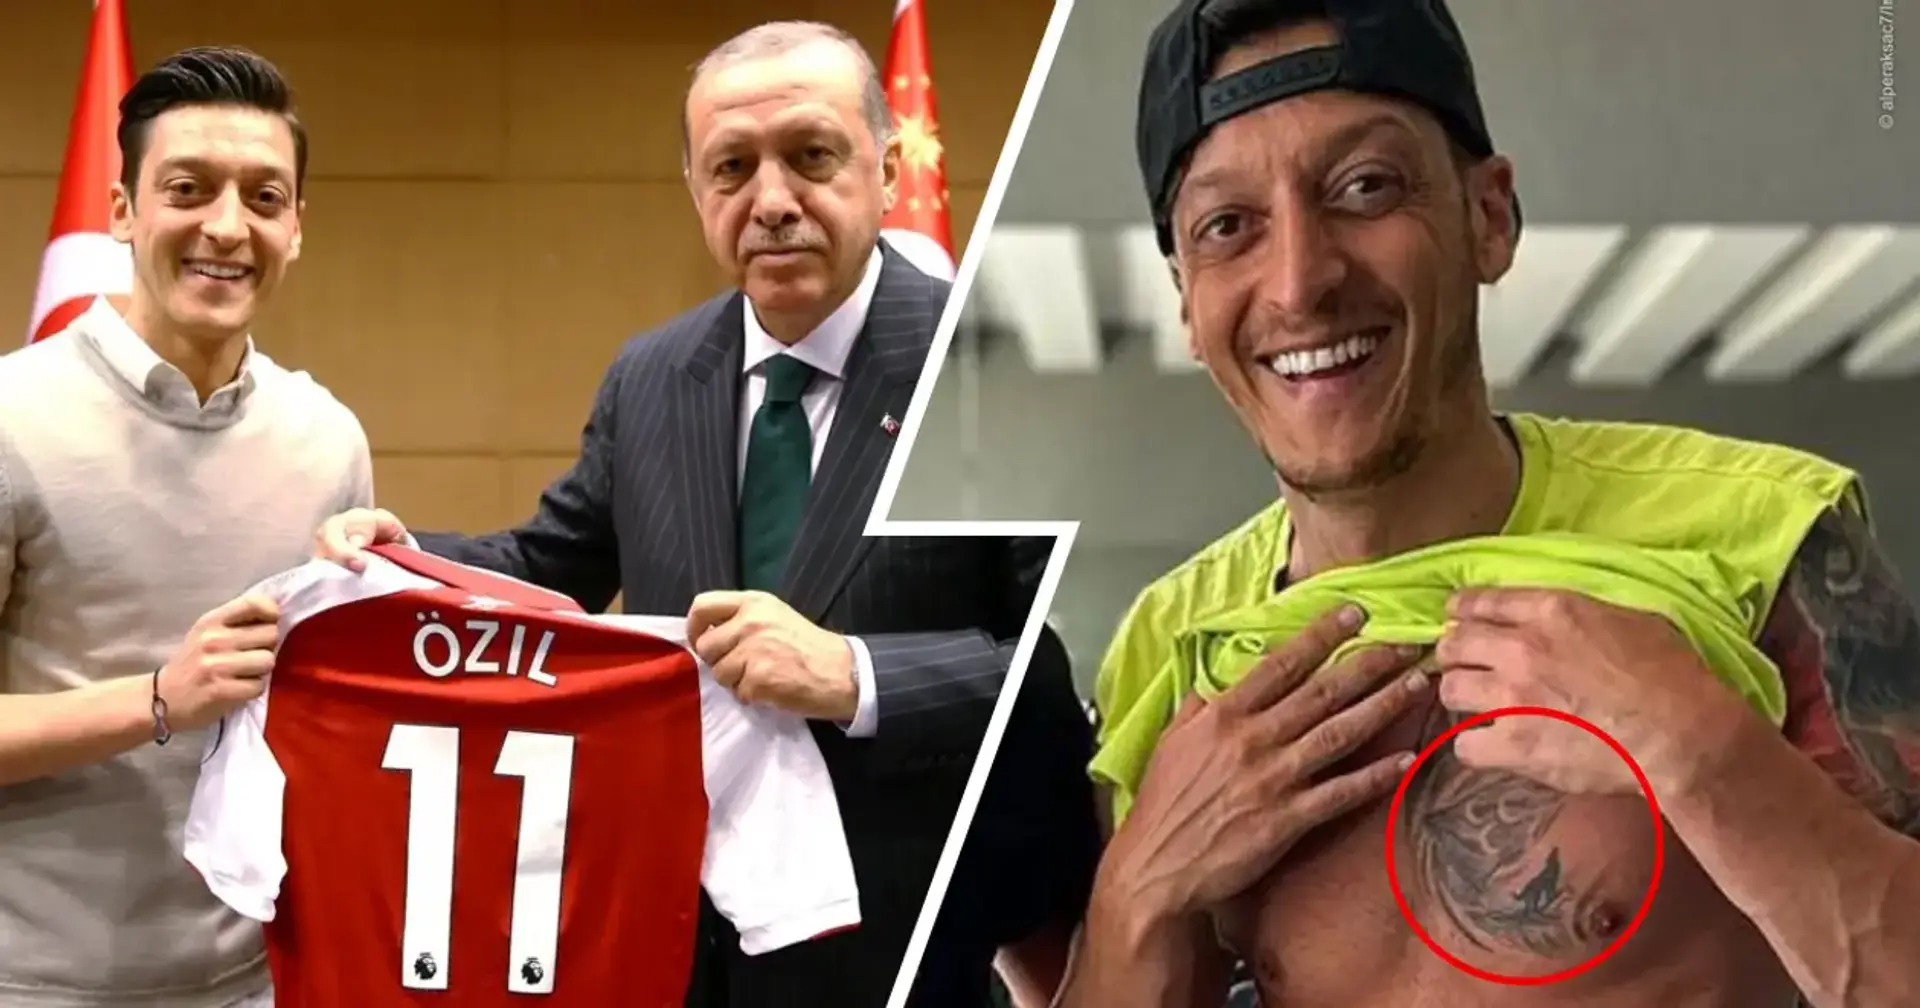 Le nouveau tatouage d'Özil a suscité de violentes réactions sur Internet. Elle est associée aux forces politiques d'extrême droite en Turquie